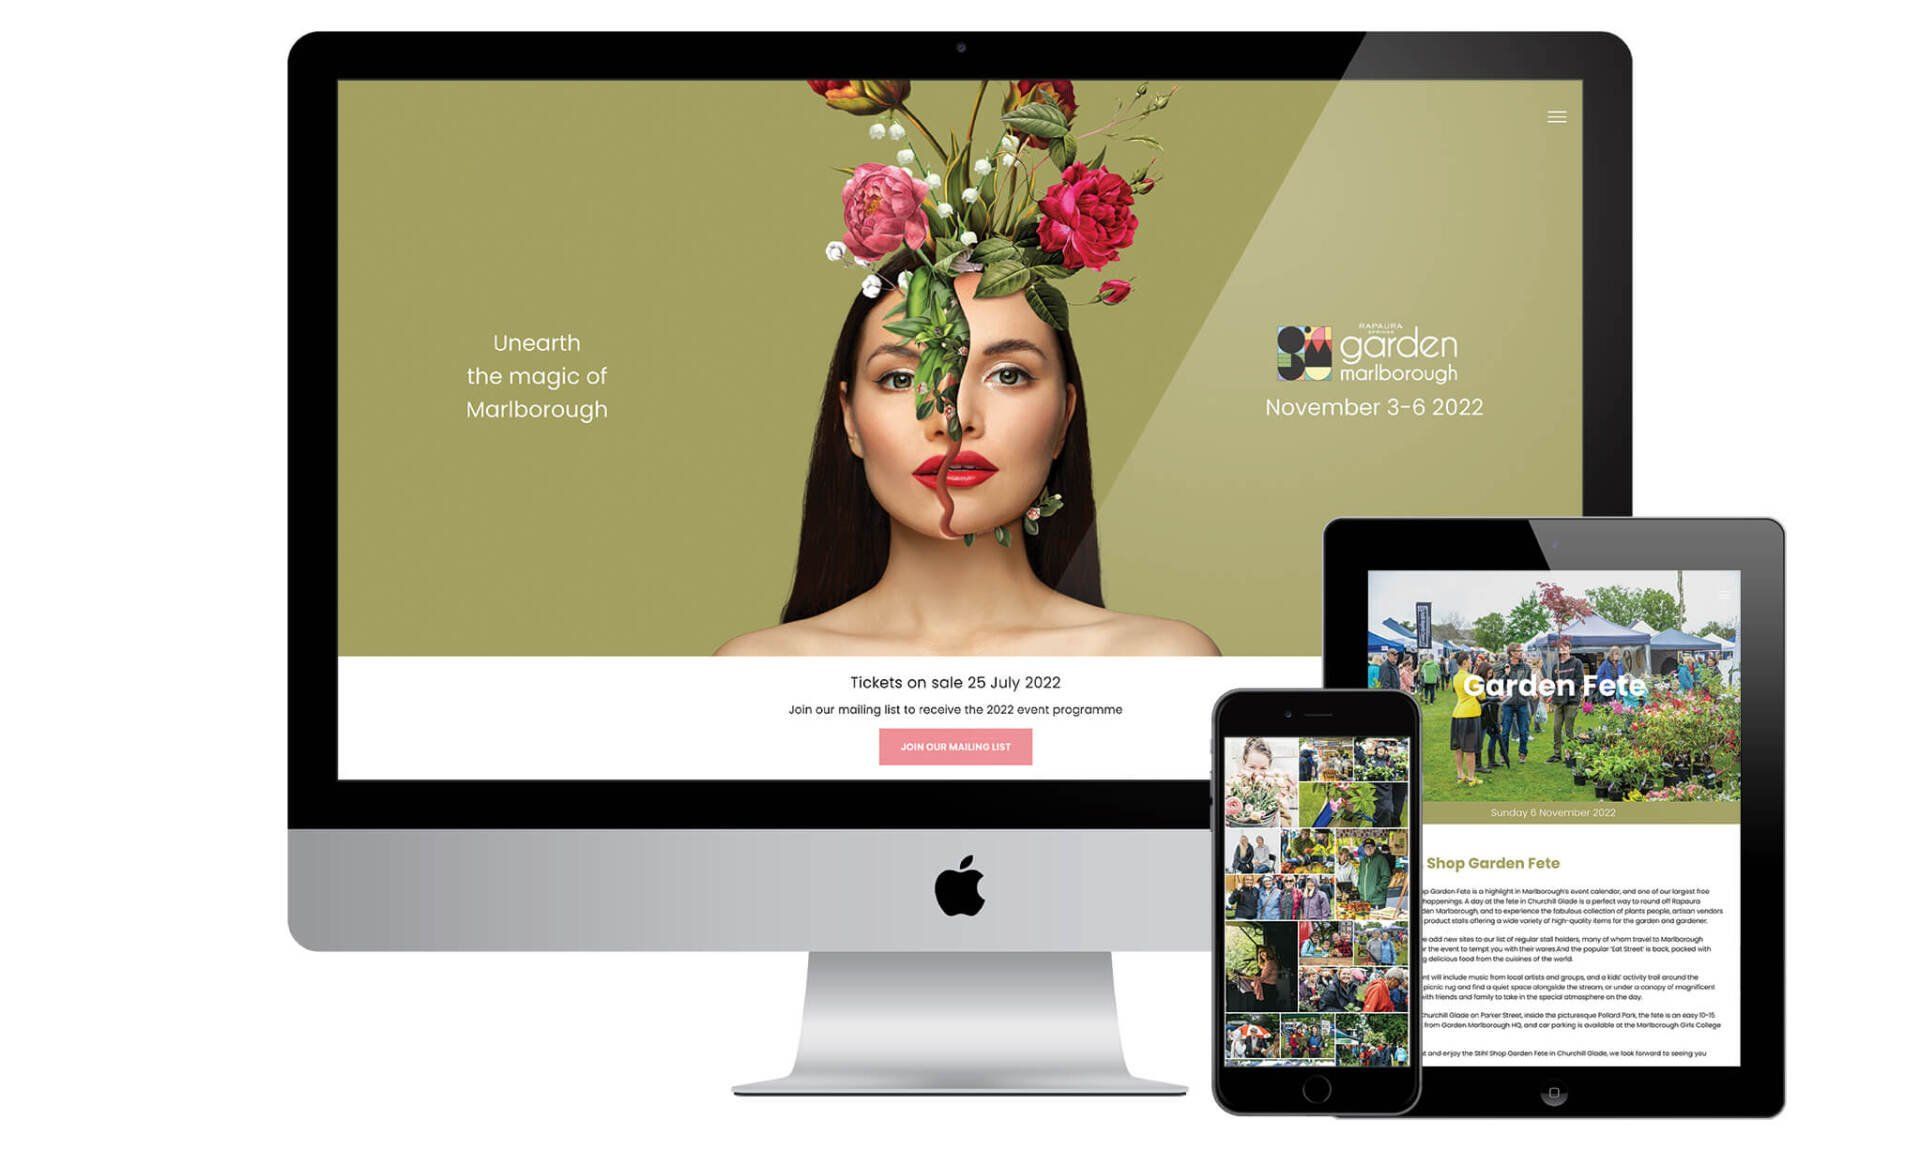 Garden Marlborough website designed by Vanilla Hayes creative graphic design  studio in Blenheim, Marlborough, New Zealand